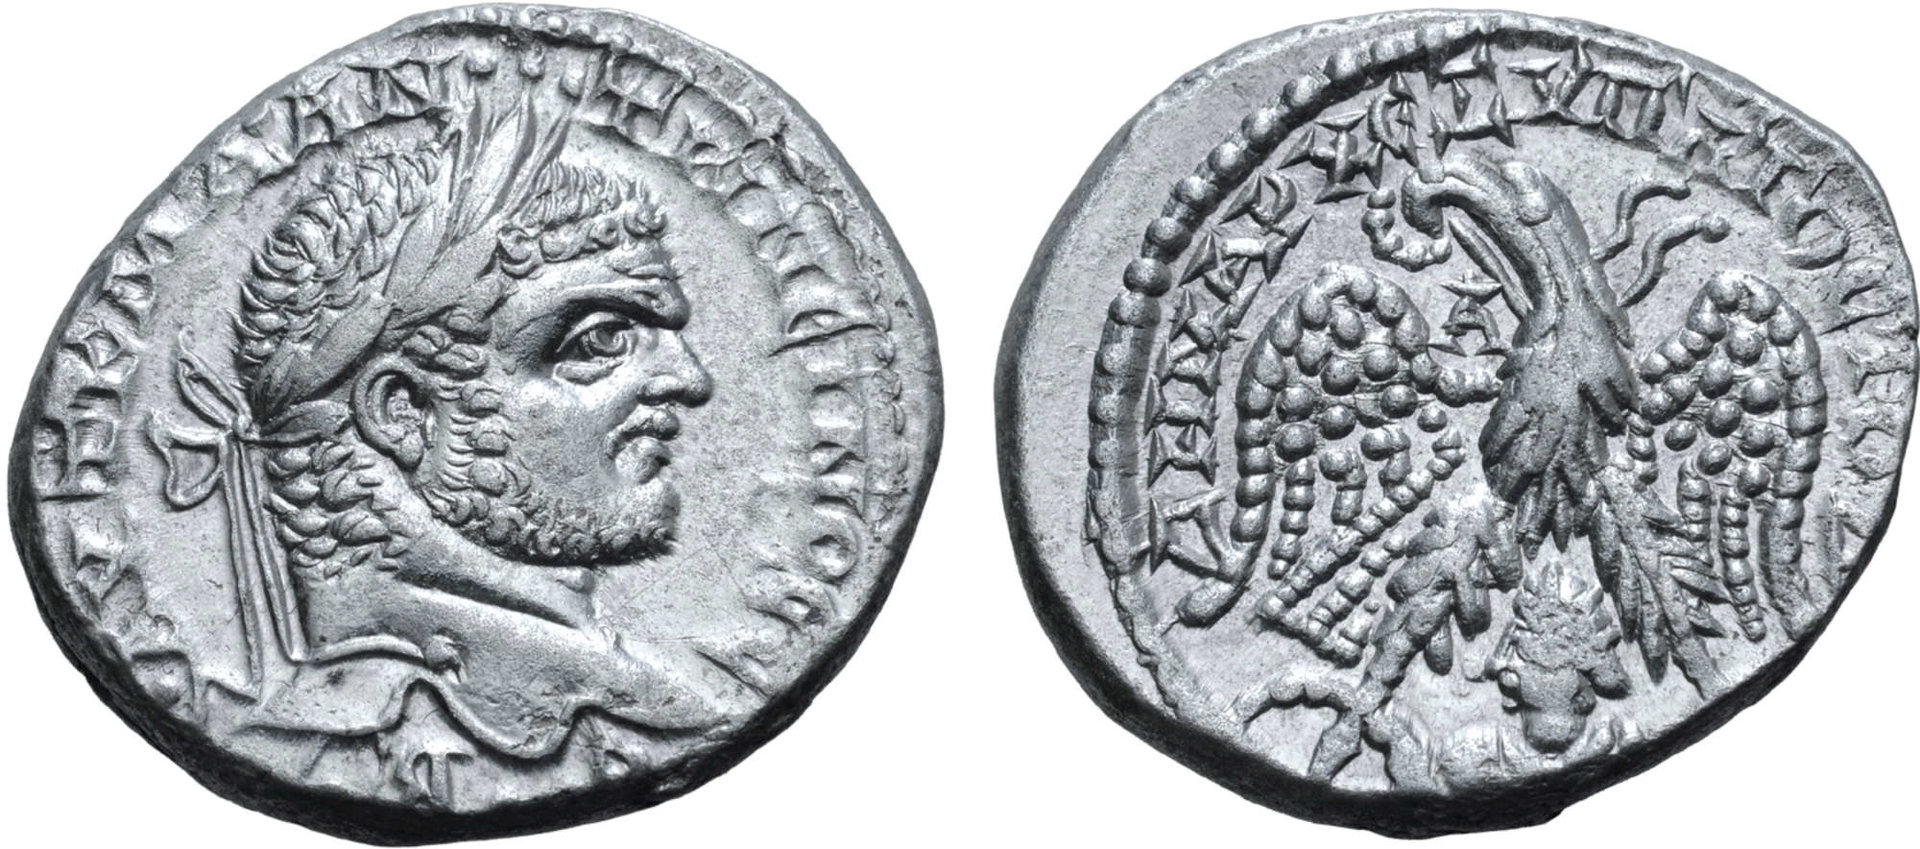 Caracalla Tetradrachm of Emesa, Seleucis andn Pieria, Roma purchase E-Sale 65.jpg